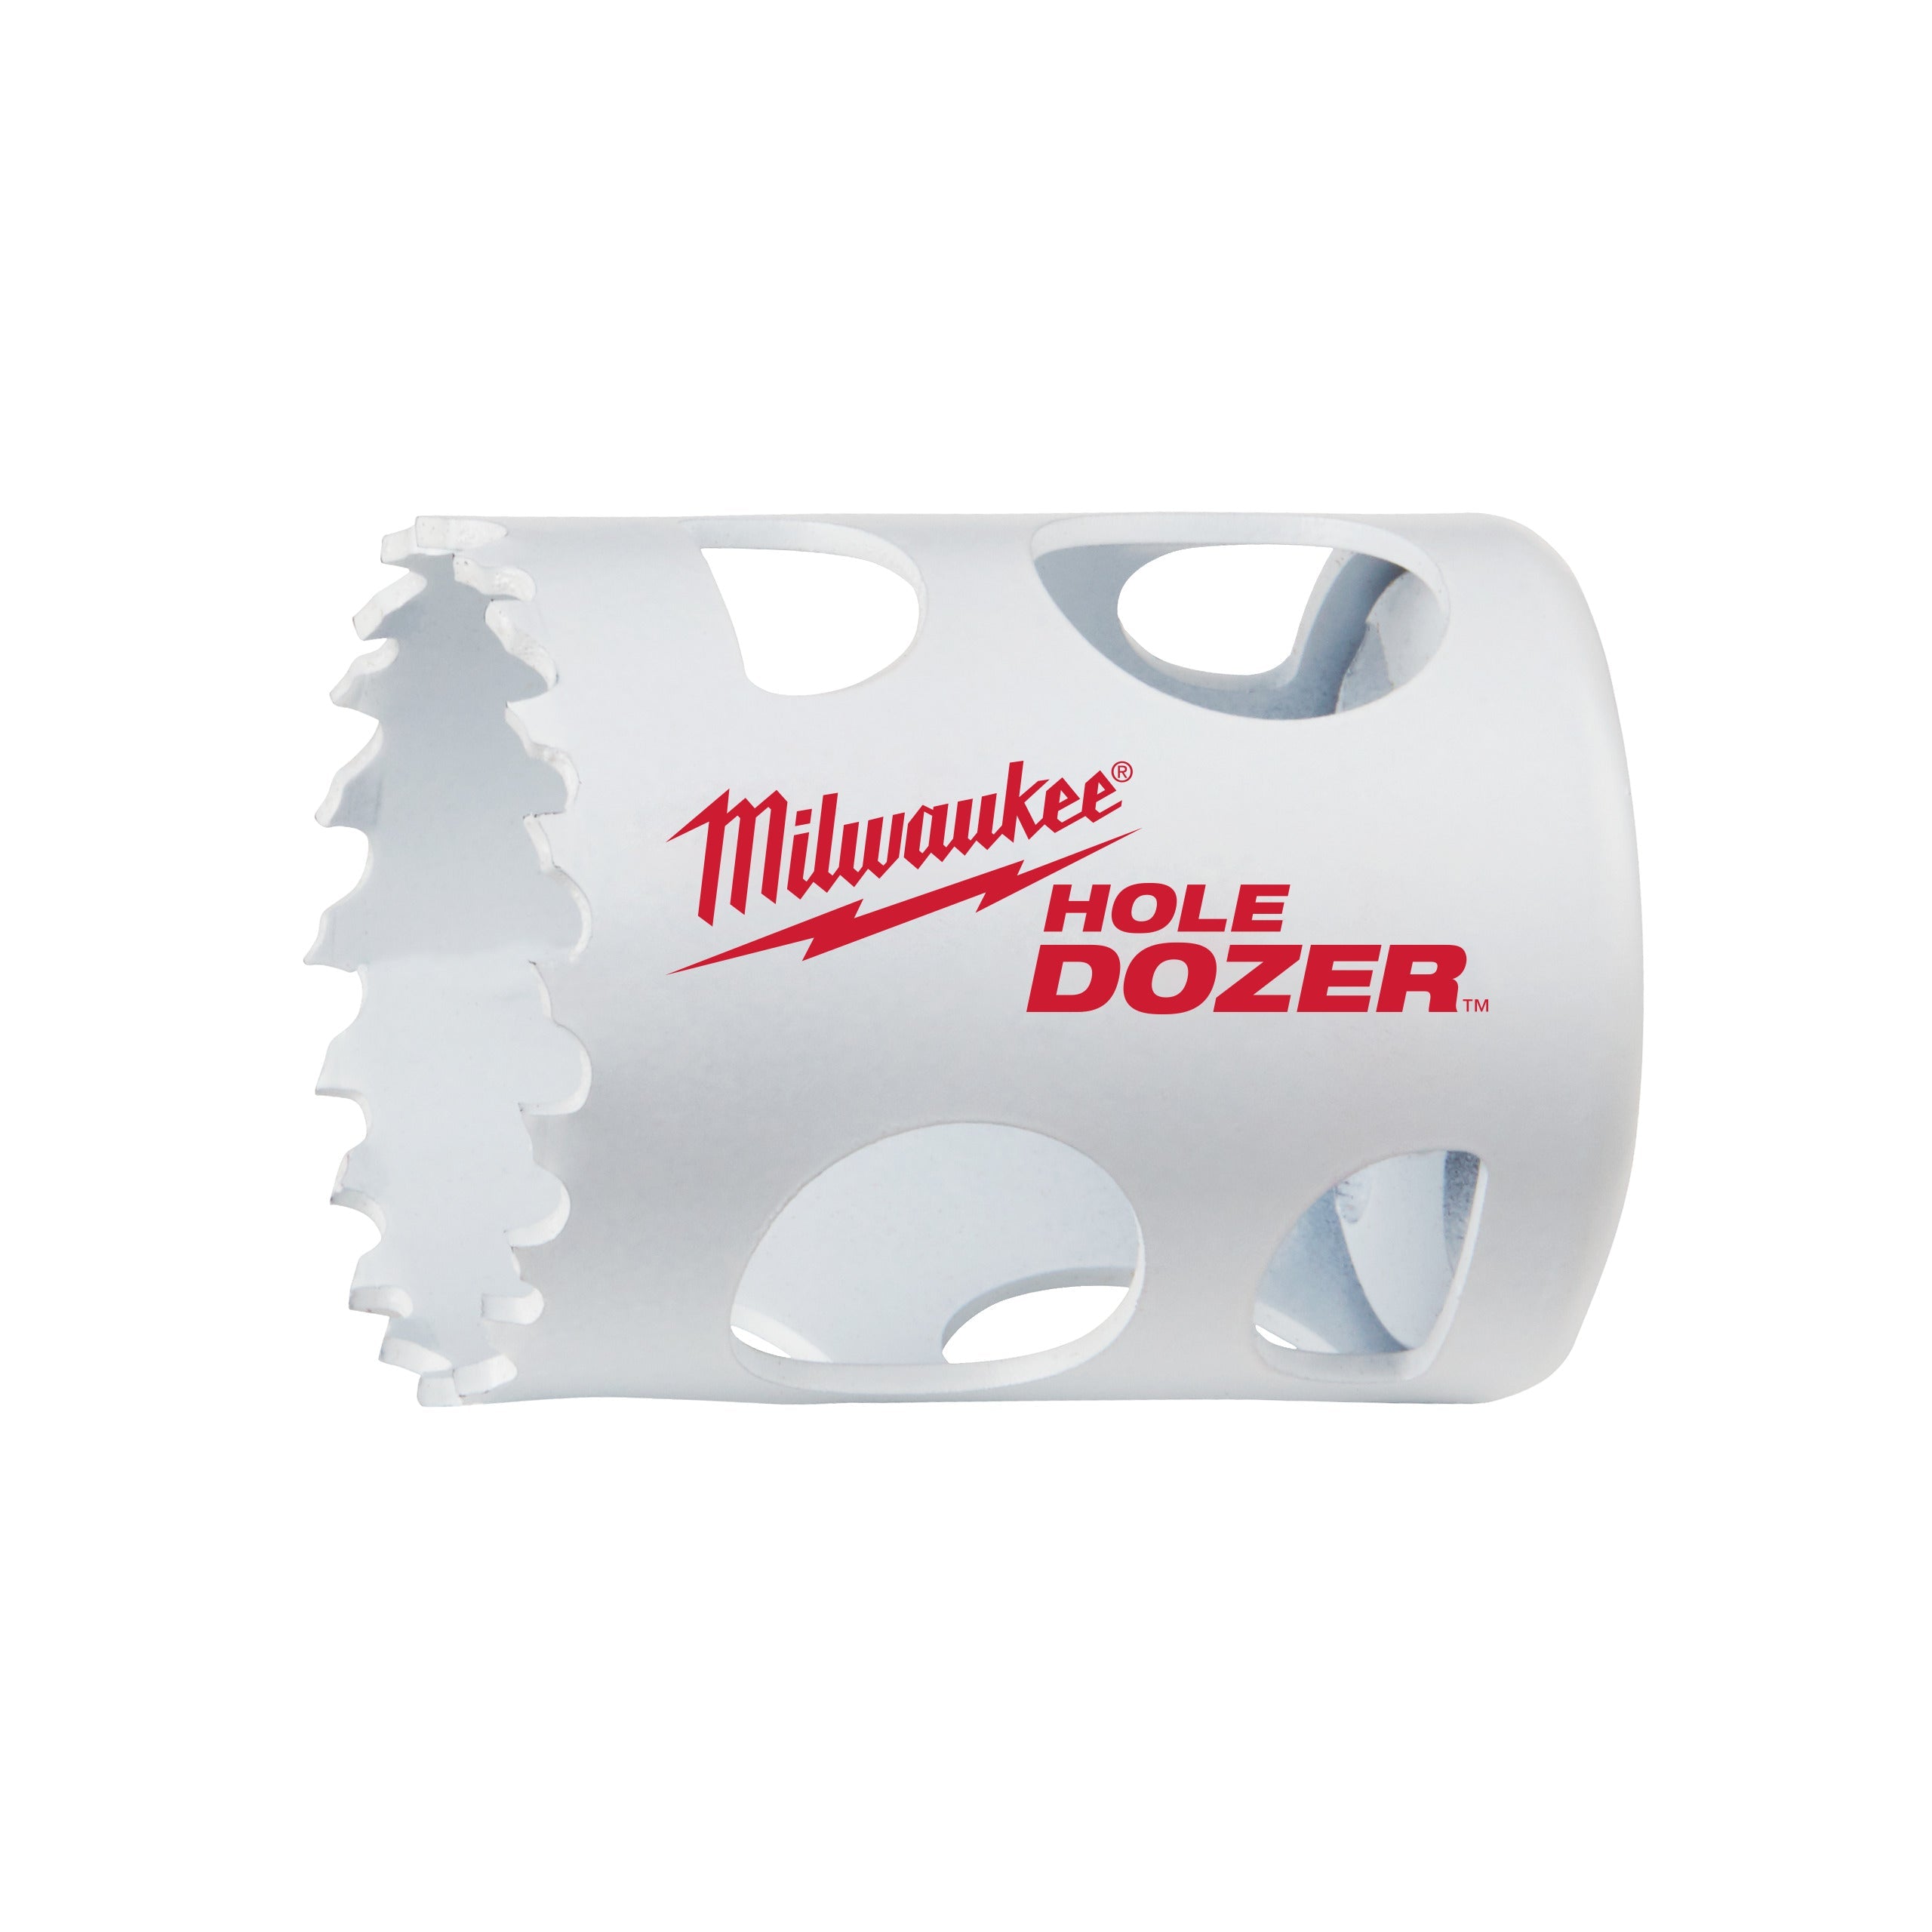 Carotă Milwaukee HOLE DOZER™ bi-metal Ø38 mm 49560082